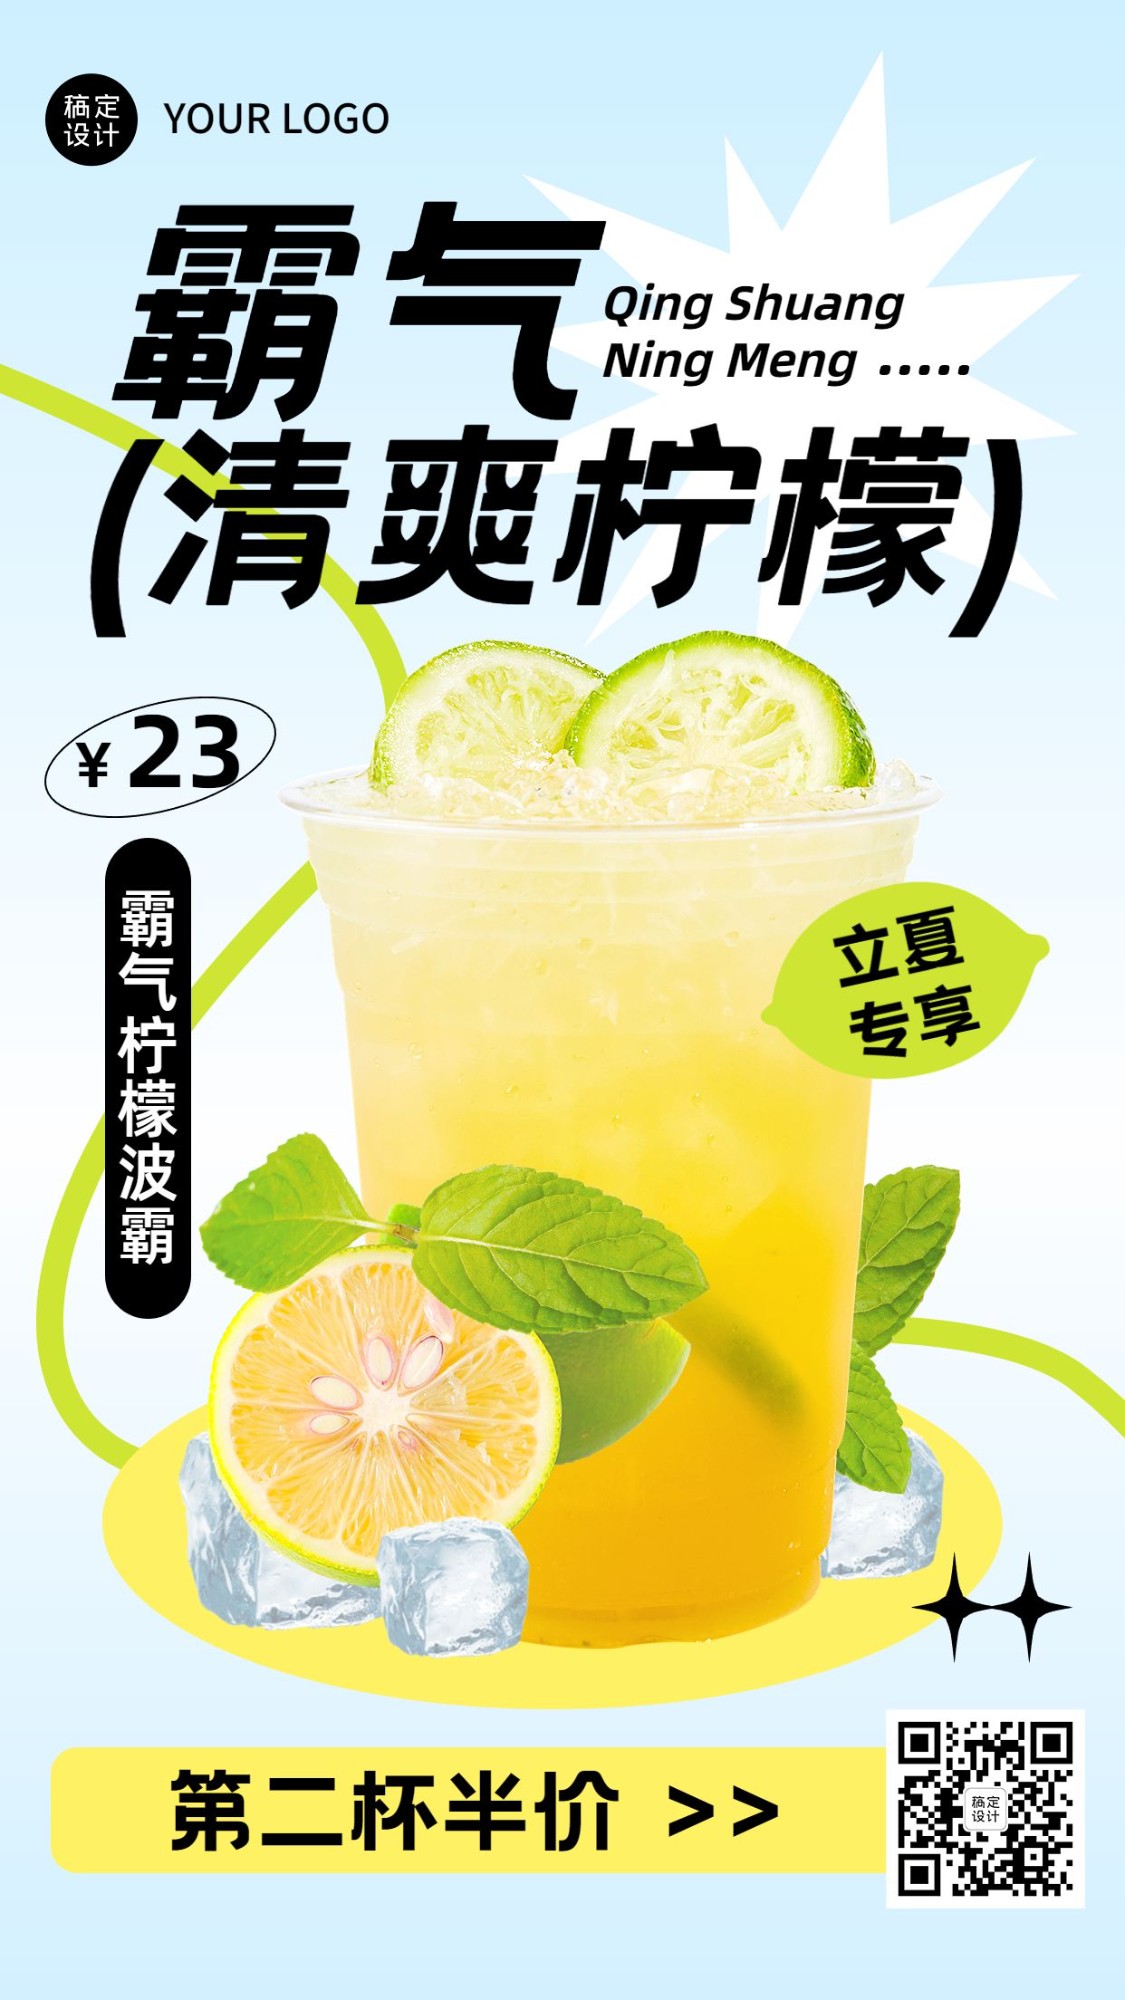 立夏餐饮美食奶茶饮品产品营销手机海报预览效果